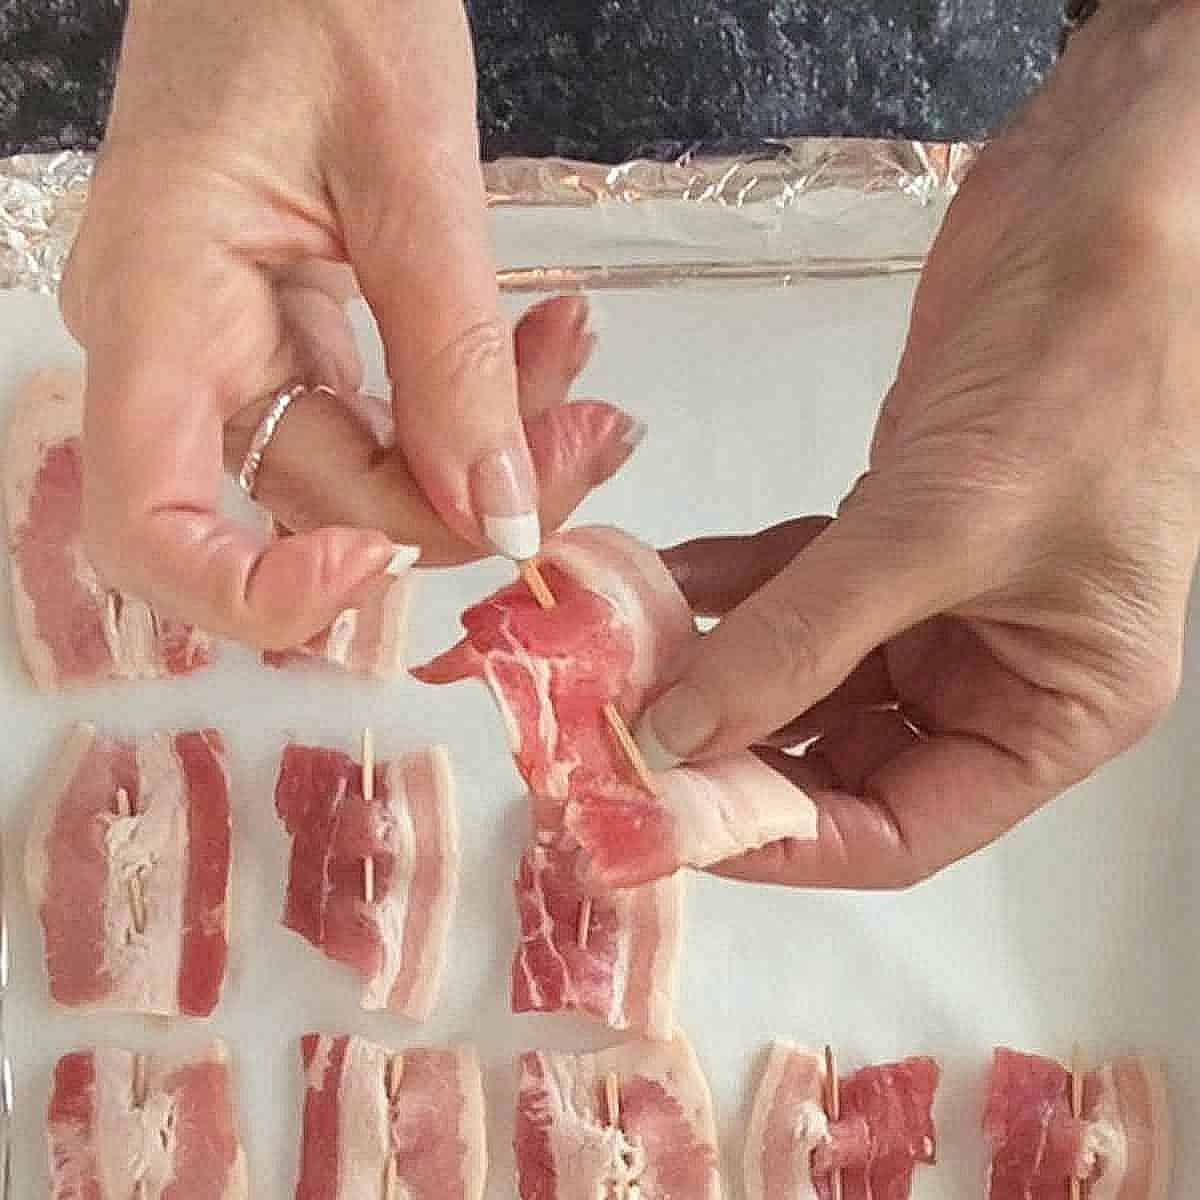 Threading a toothpick through a piece of bacon.